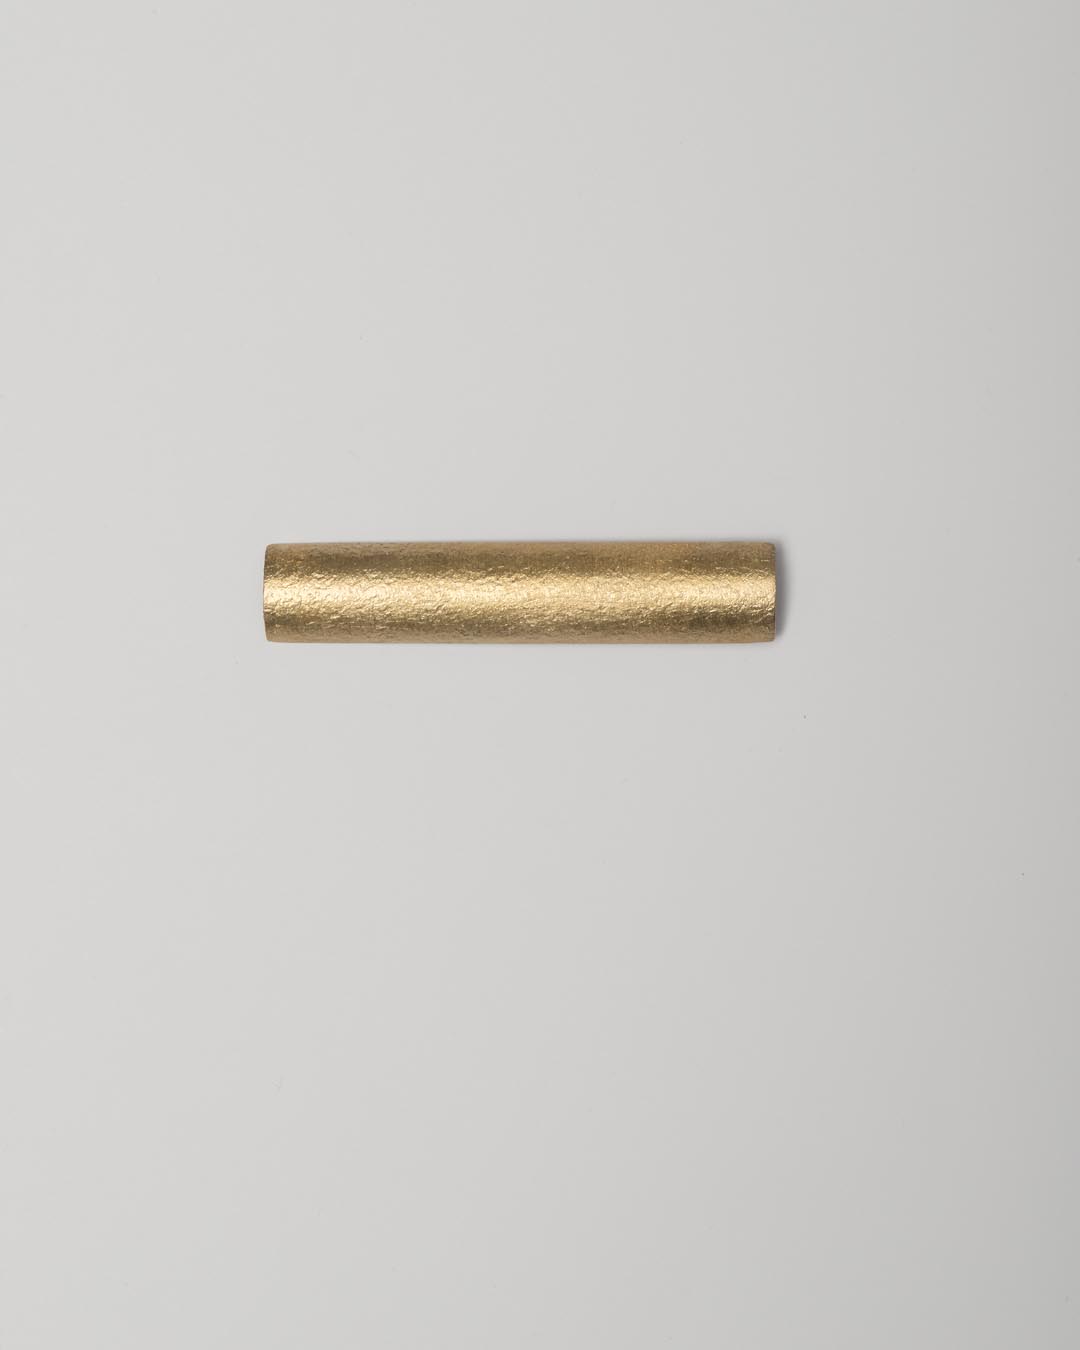 Yasuki Hiramatsu, untitled, brooch; gold-plated silver, 14 x 72 x 4.5 mm